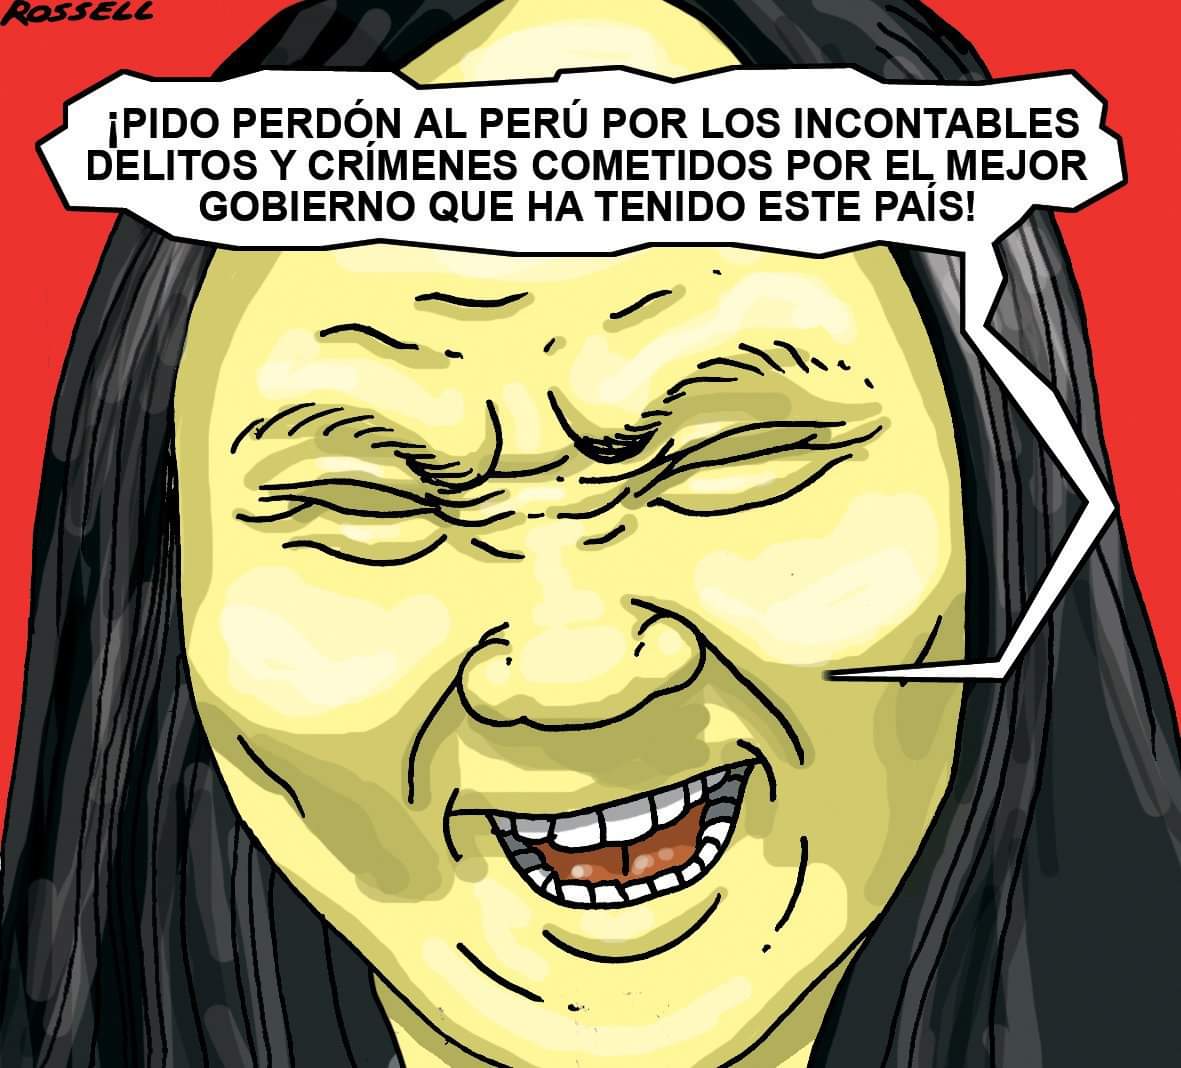 El legado criminal de Keiko Fujimori Misión Verdad, Venezuela